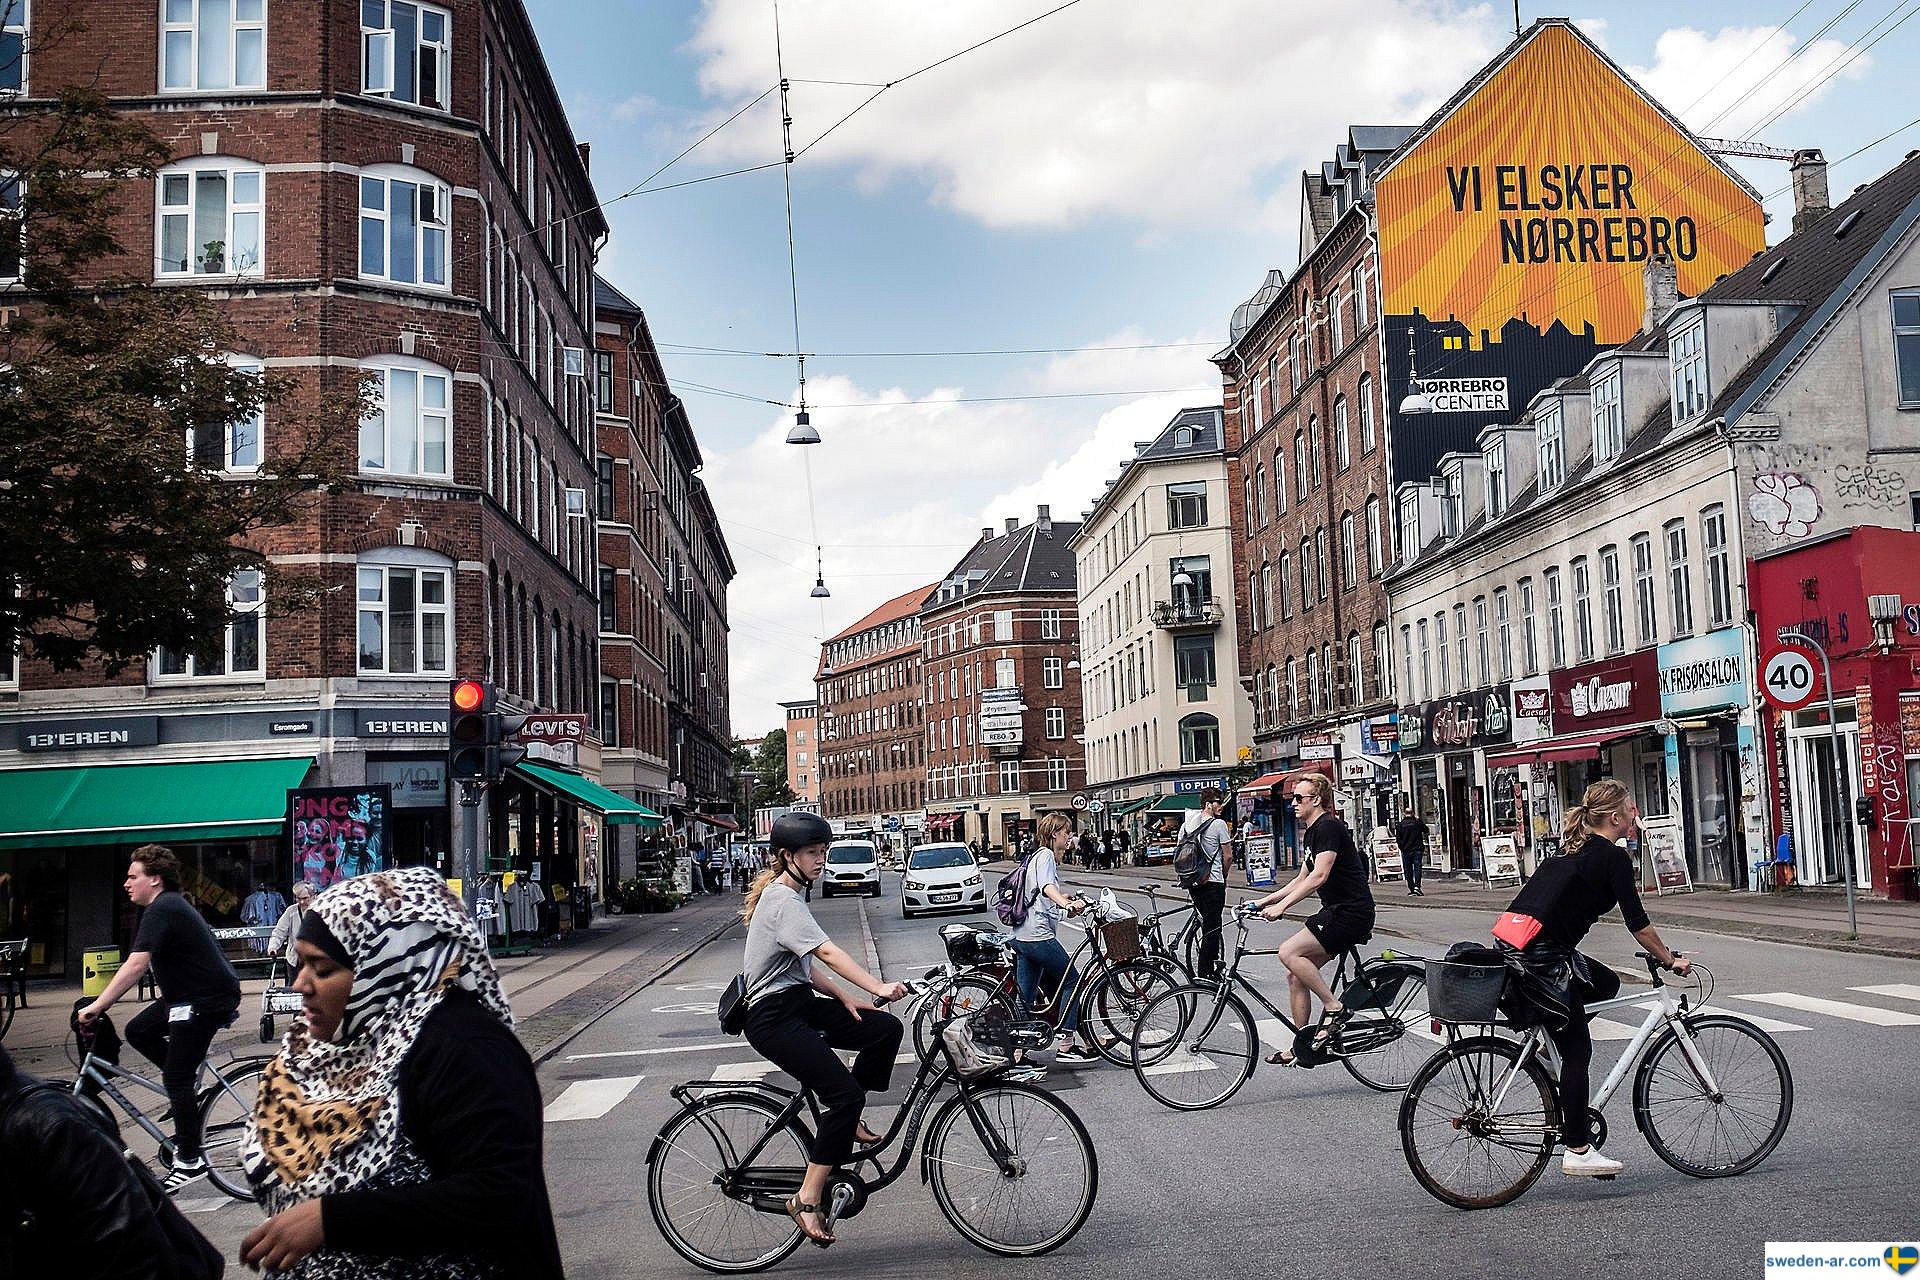 انخفاض أسعار سوق الإسكان بشكل كبير في كوبنهاجن عقب الركود الأخير الذي حل على الأسواق نتيجة الأزمة الراهنة.